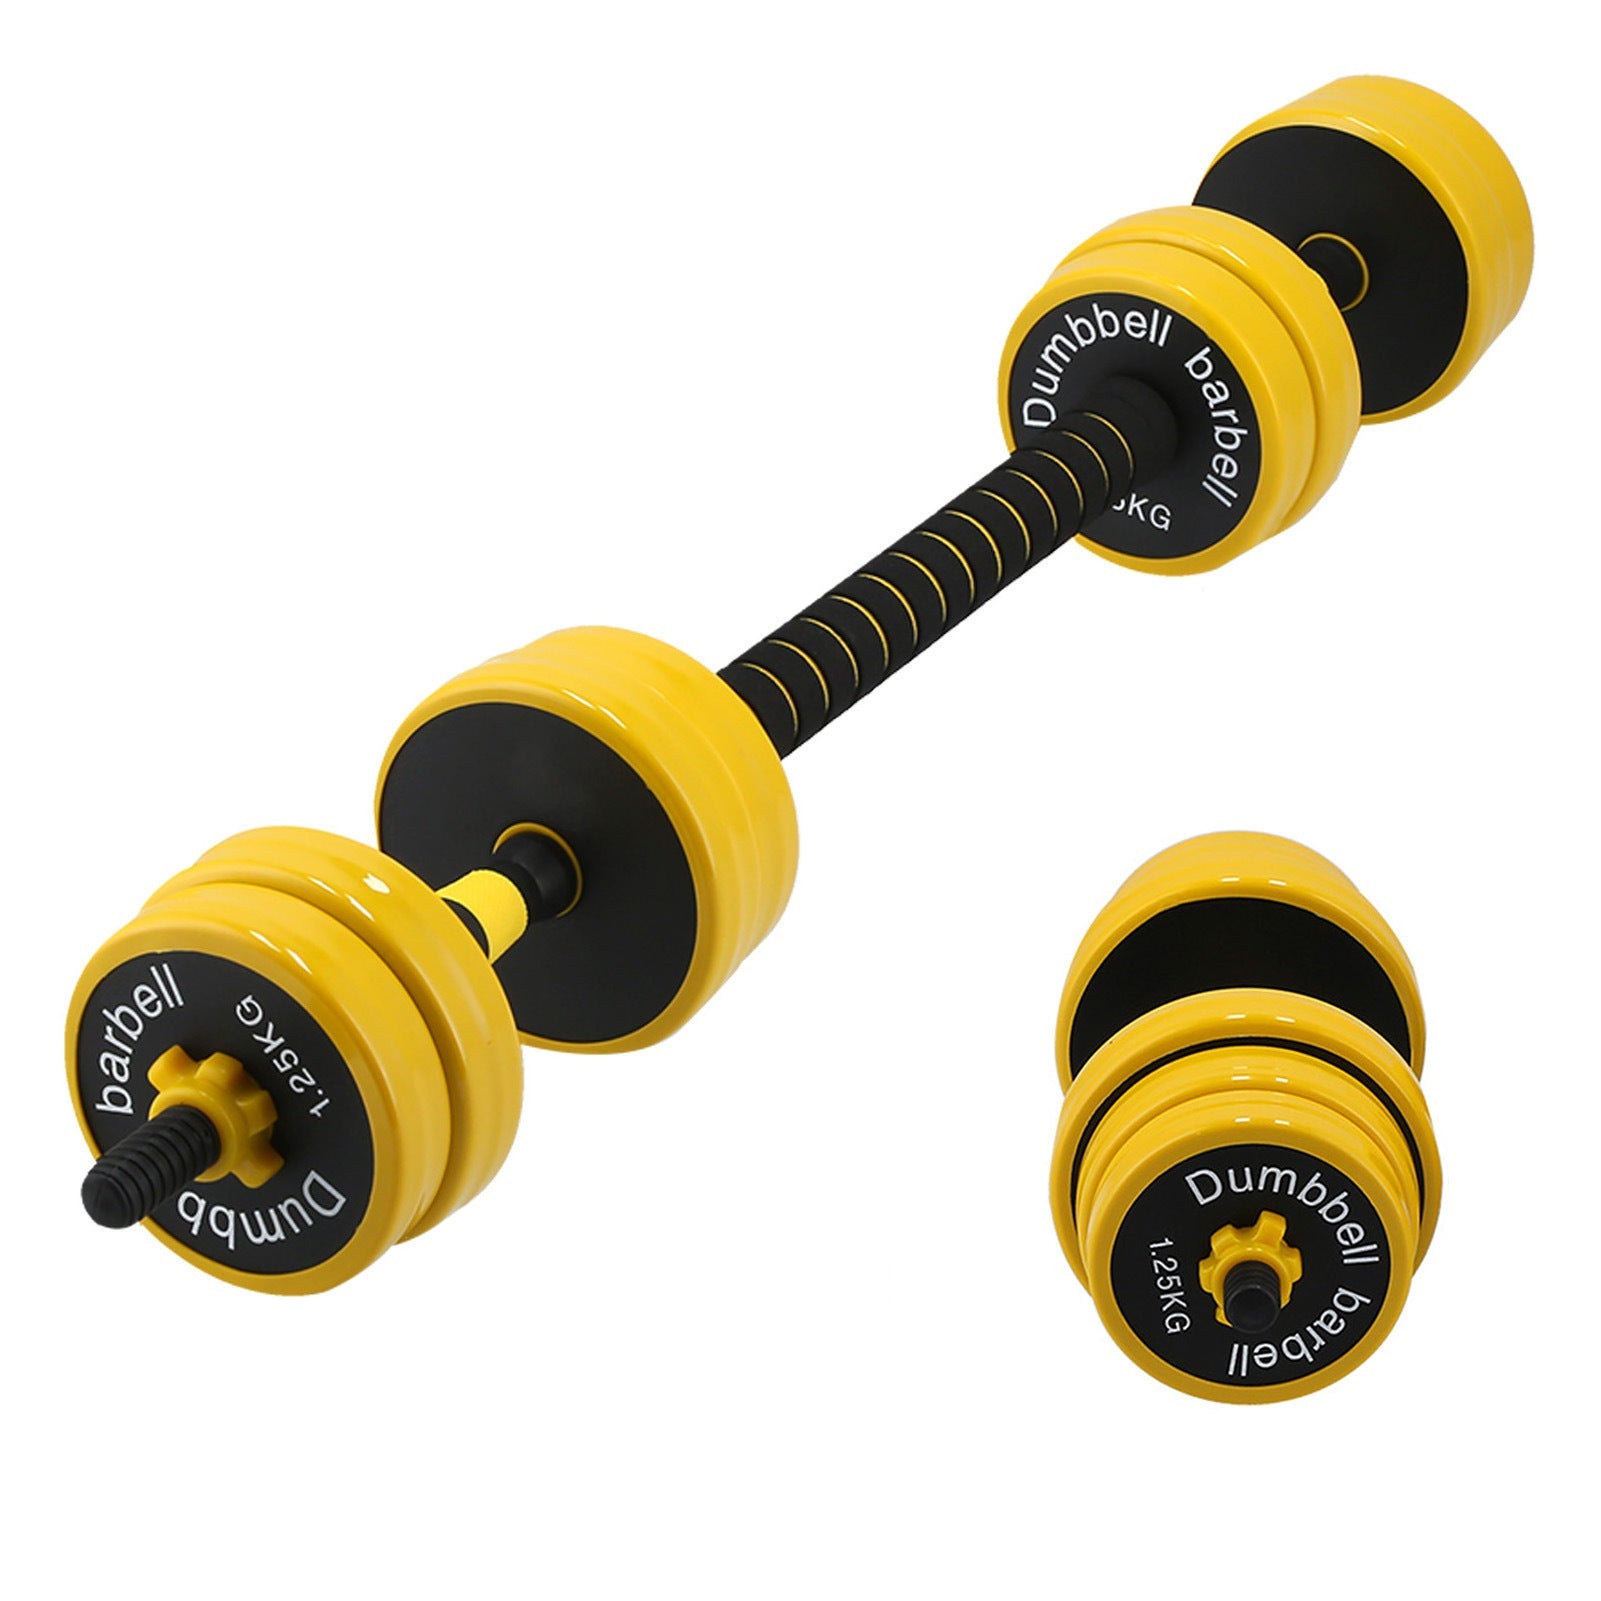 20KG Dumbbell Set 2 in 1 Adjustable Weights Dumbbells Set for Home Gym Fitness Workout Moorescarts